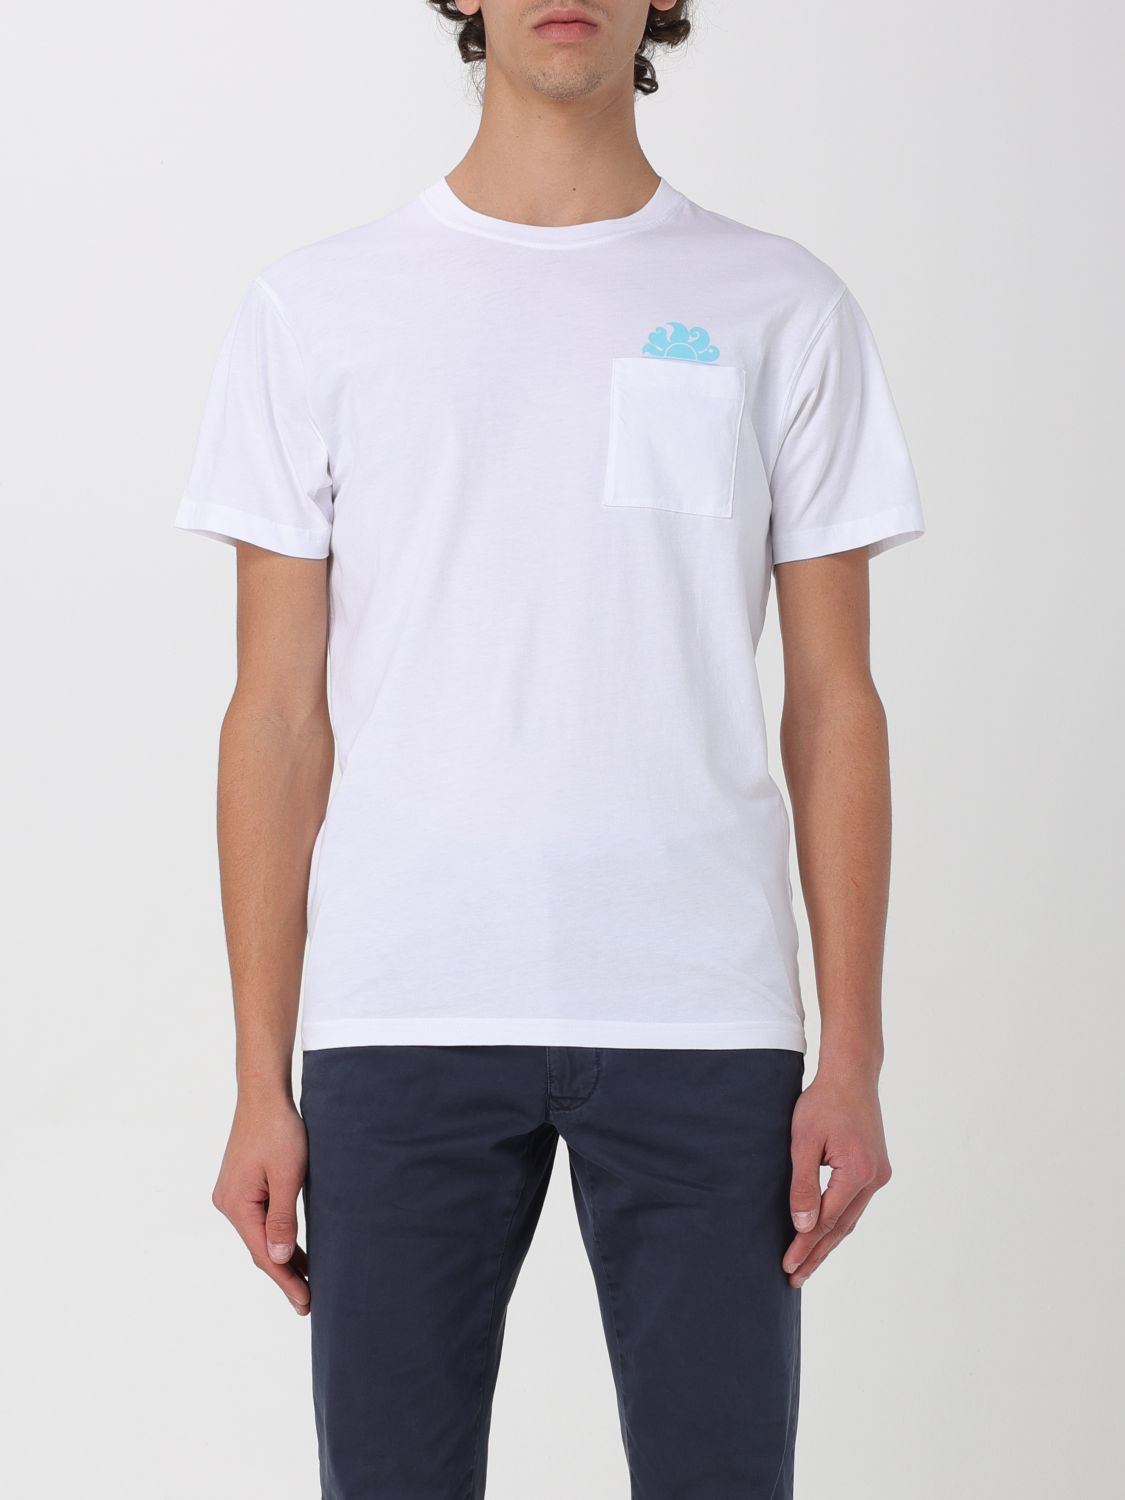 Sundek T-Shirt SUNDEK Men colour White